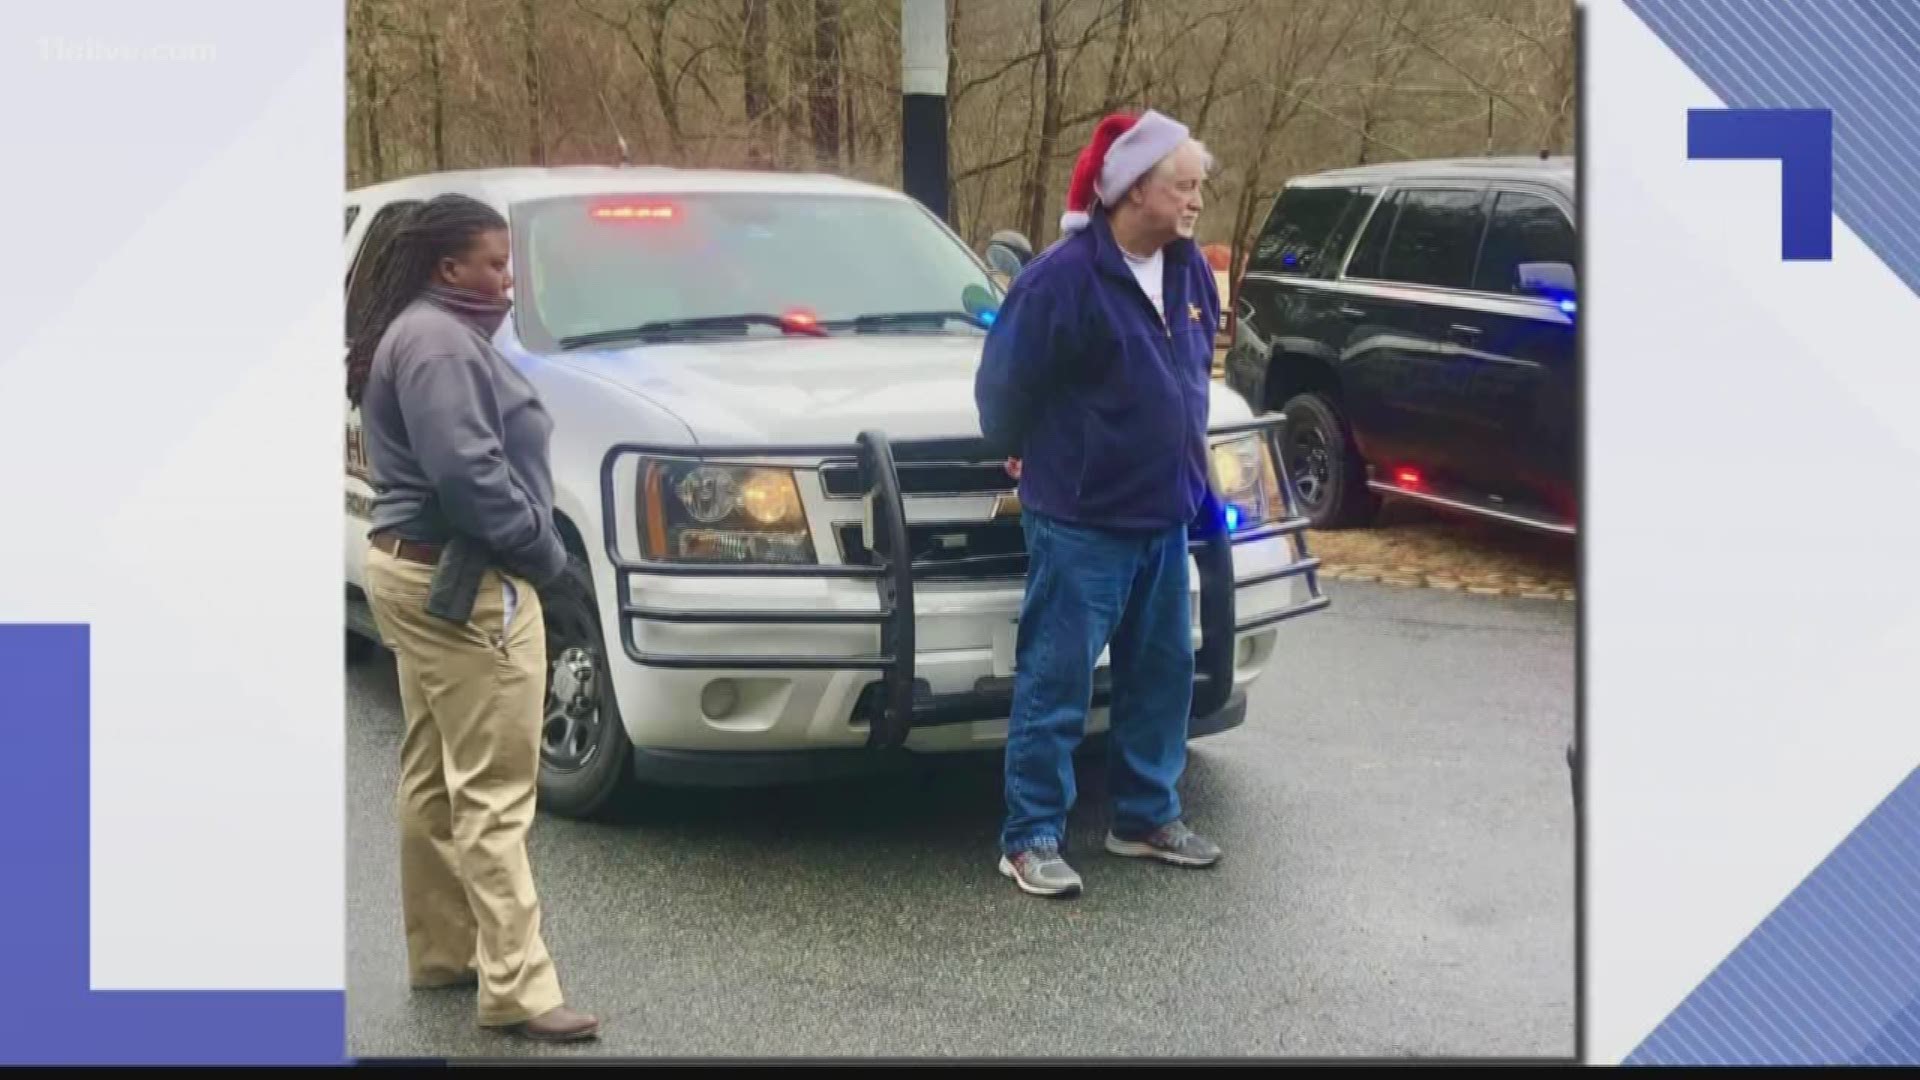 He was wearing a Santa hat when he was taken into custody.